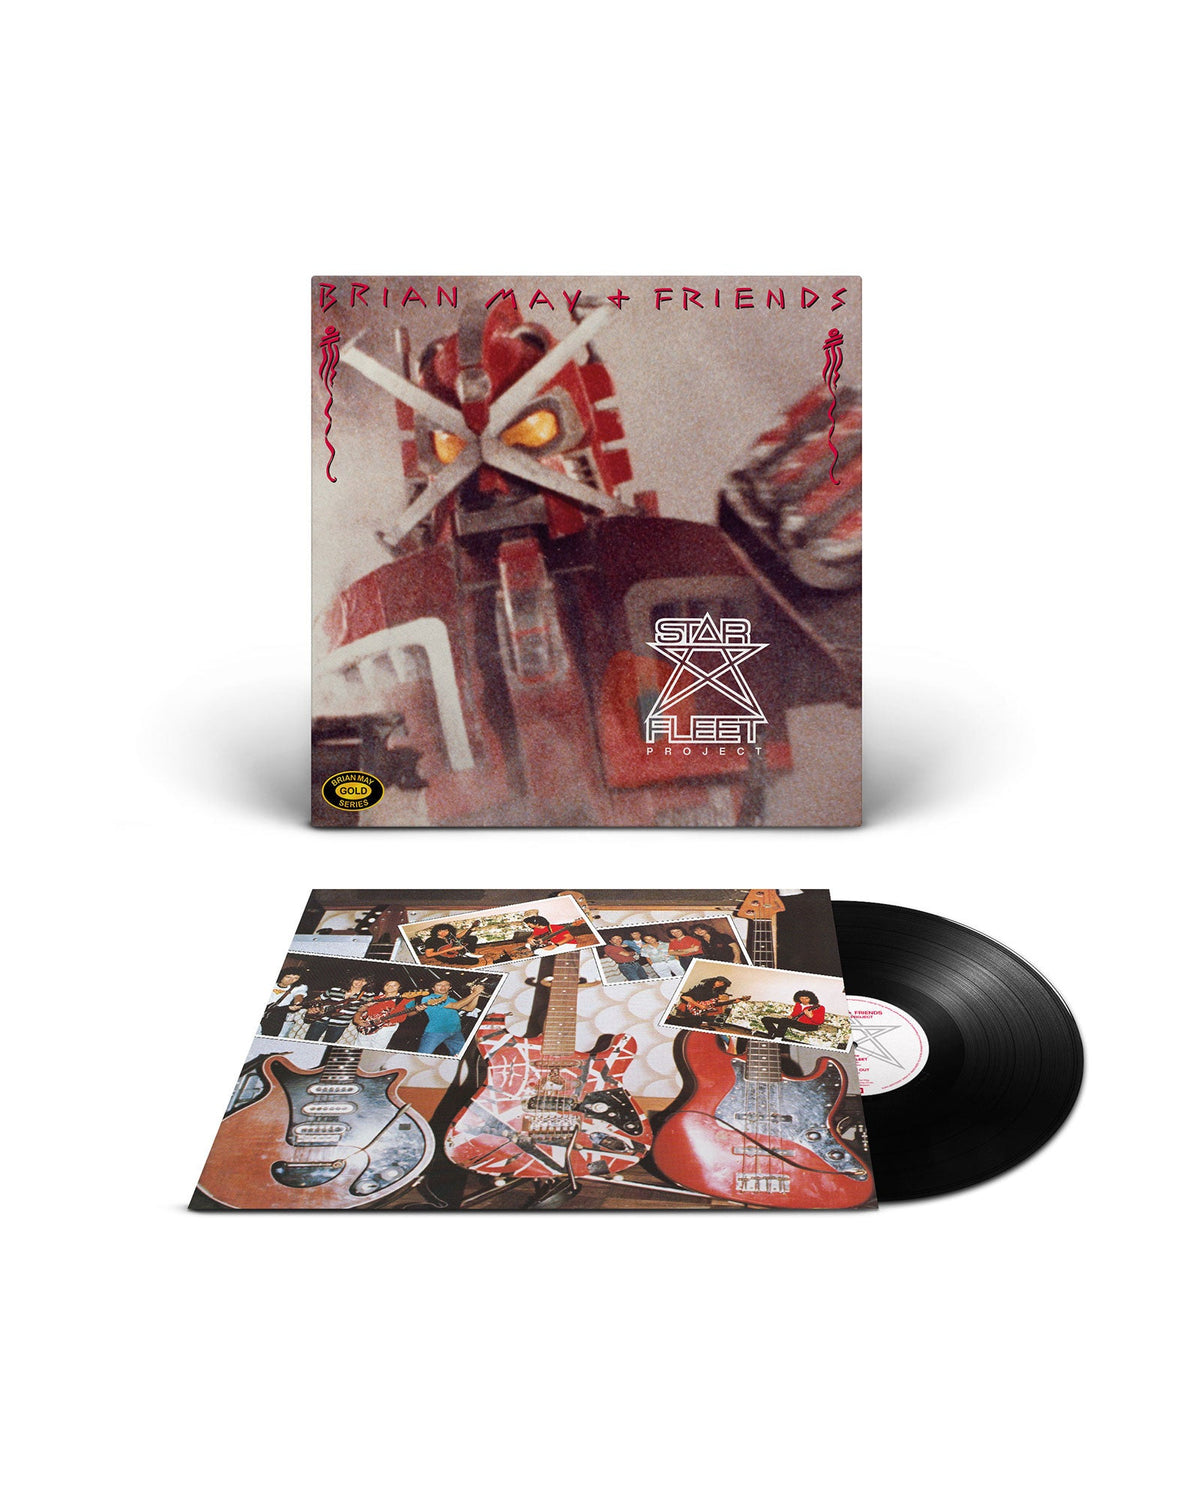 Brian May - LP Vinilo "Star Fleet Project 40 Aniversario” - D2fy · Rocktud - Rocktud